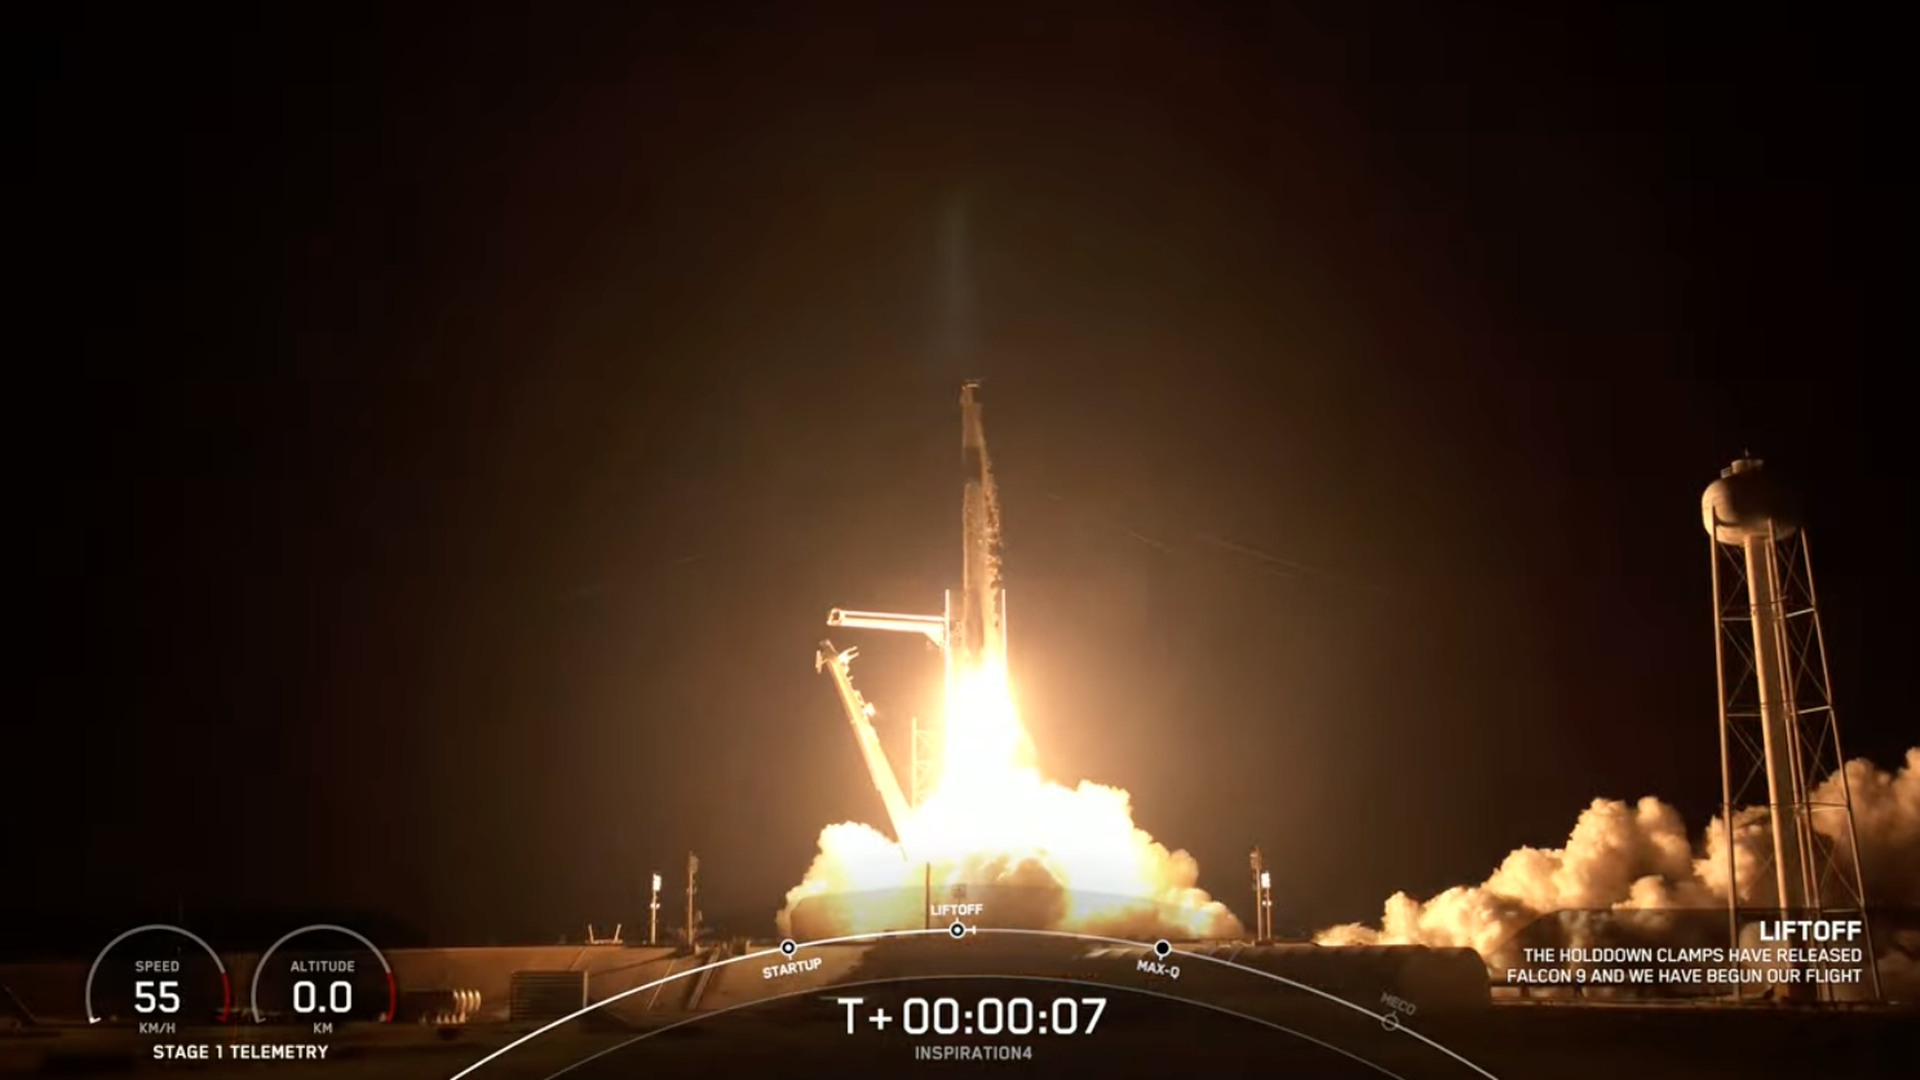 A screenshot of the rocket launching.